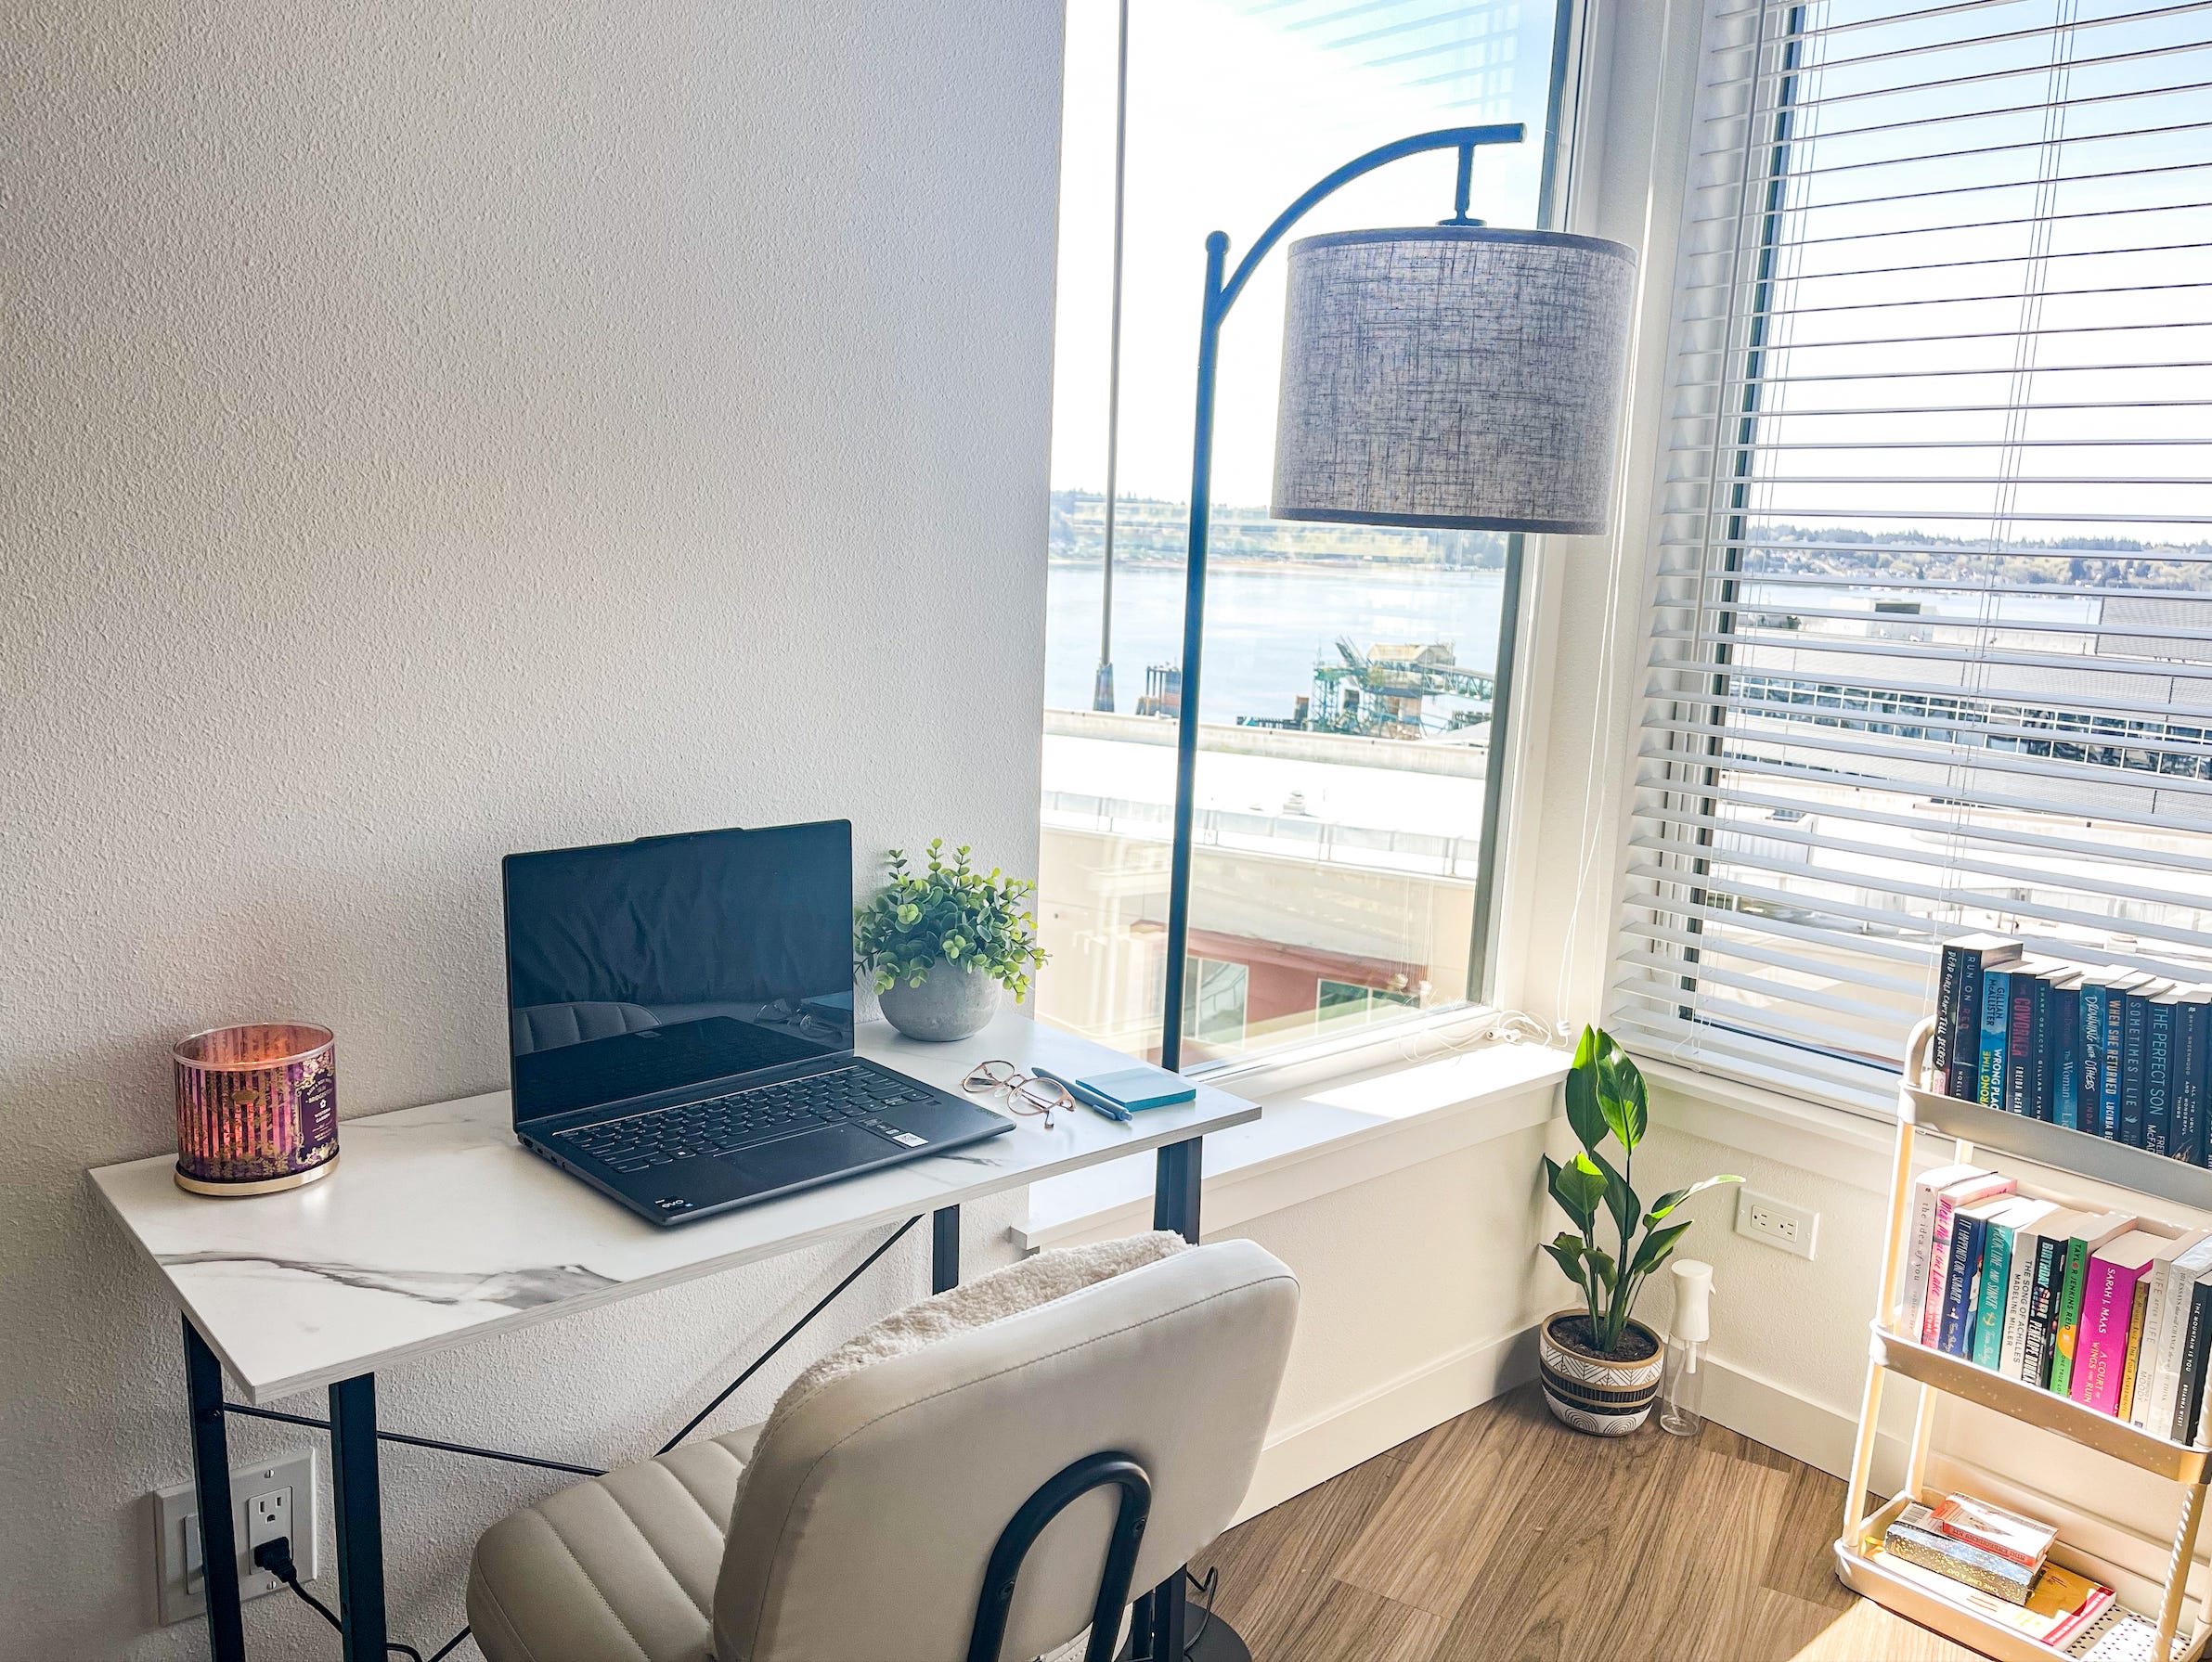 Ein Arbeitsbereich mit einem weißen Schreibtisch, einem Stuhl und einer Lampe mit Fenstern und einem Bücherregal im Hintergrund.  Auf dem Schreibtisch stehen eine Kerze und ein Laptop